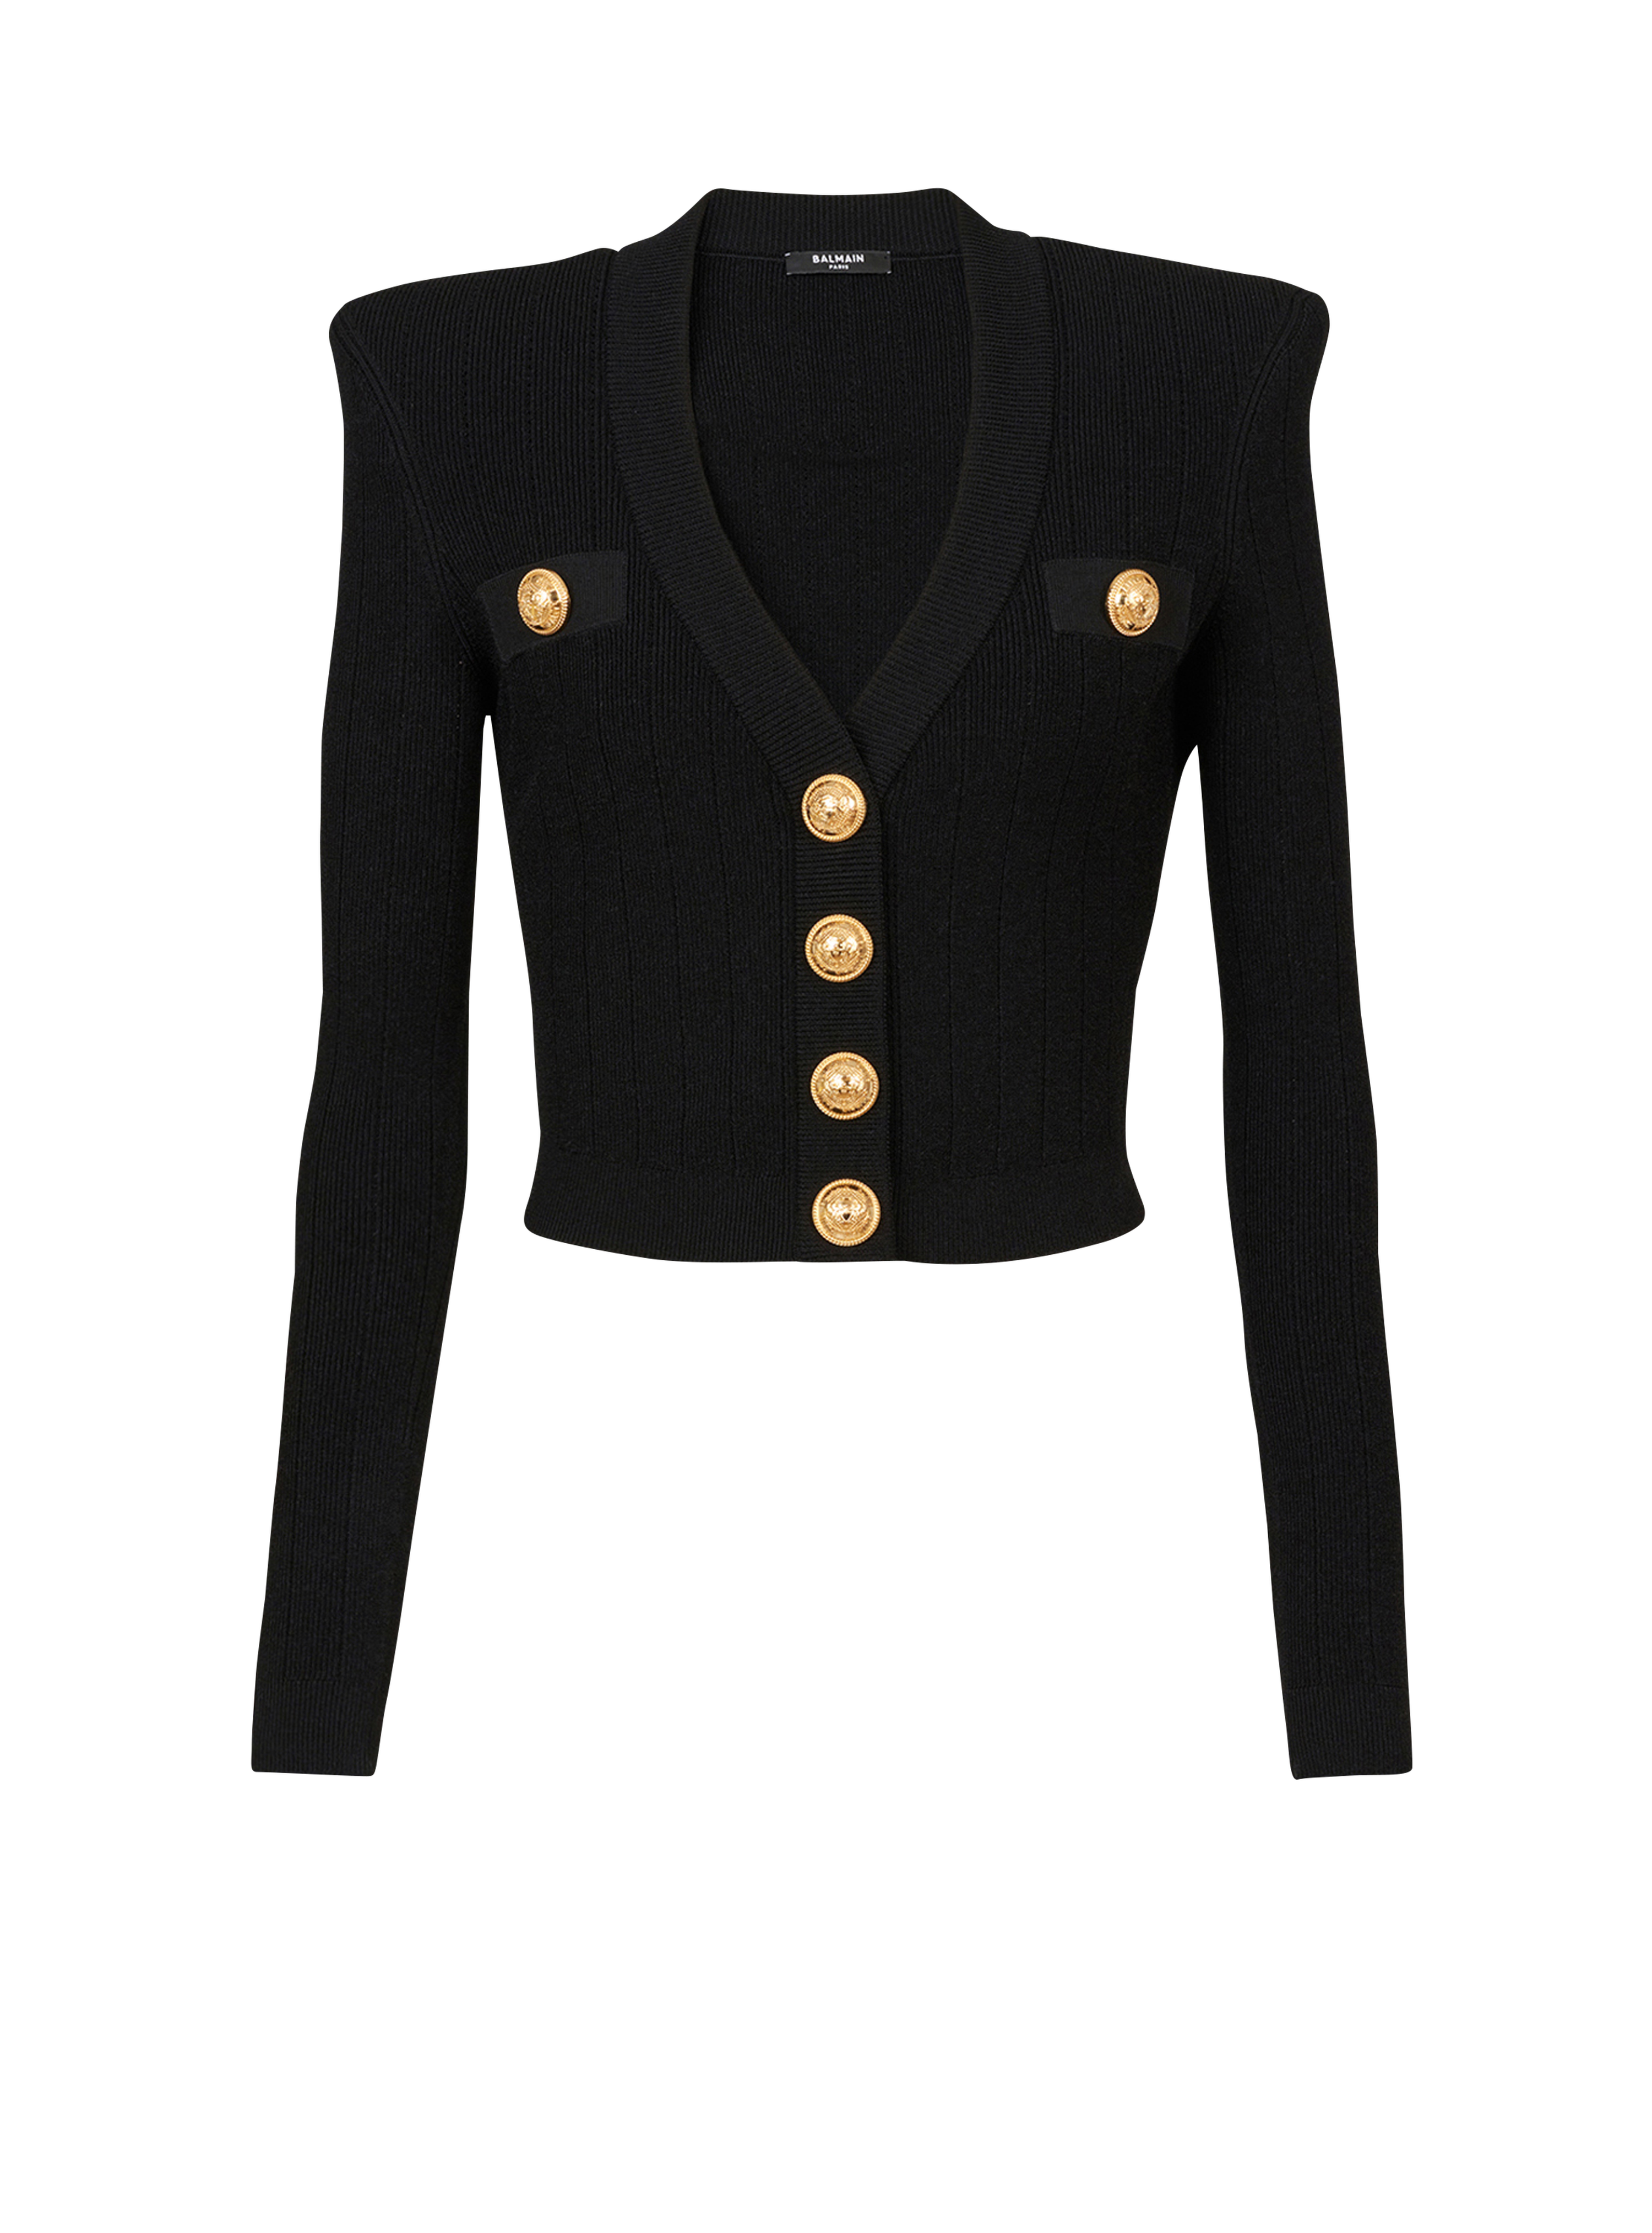 Cardigan corto in maglia eco-design con bottoni dorati, nero